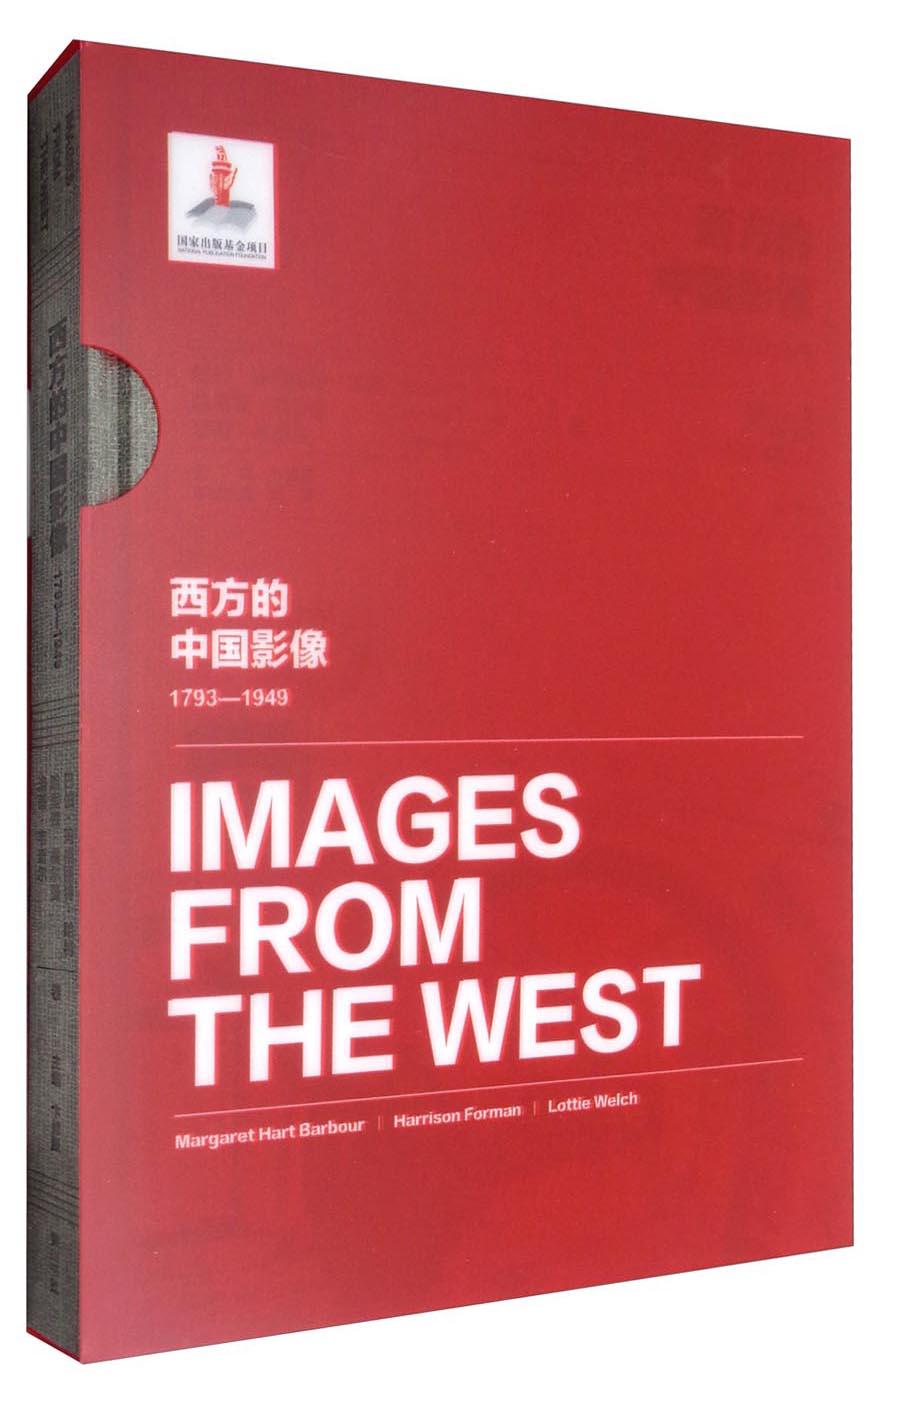 正版现货西方的中国影像 1793-1949 巴伯·玛格丽特·哈特哈里森·福尔曼洛蒂·韦奇尔卷 卞修跃 刘萍编  黄山书社 9787546154299